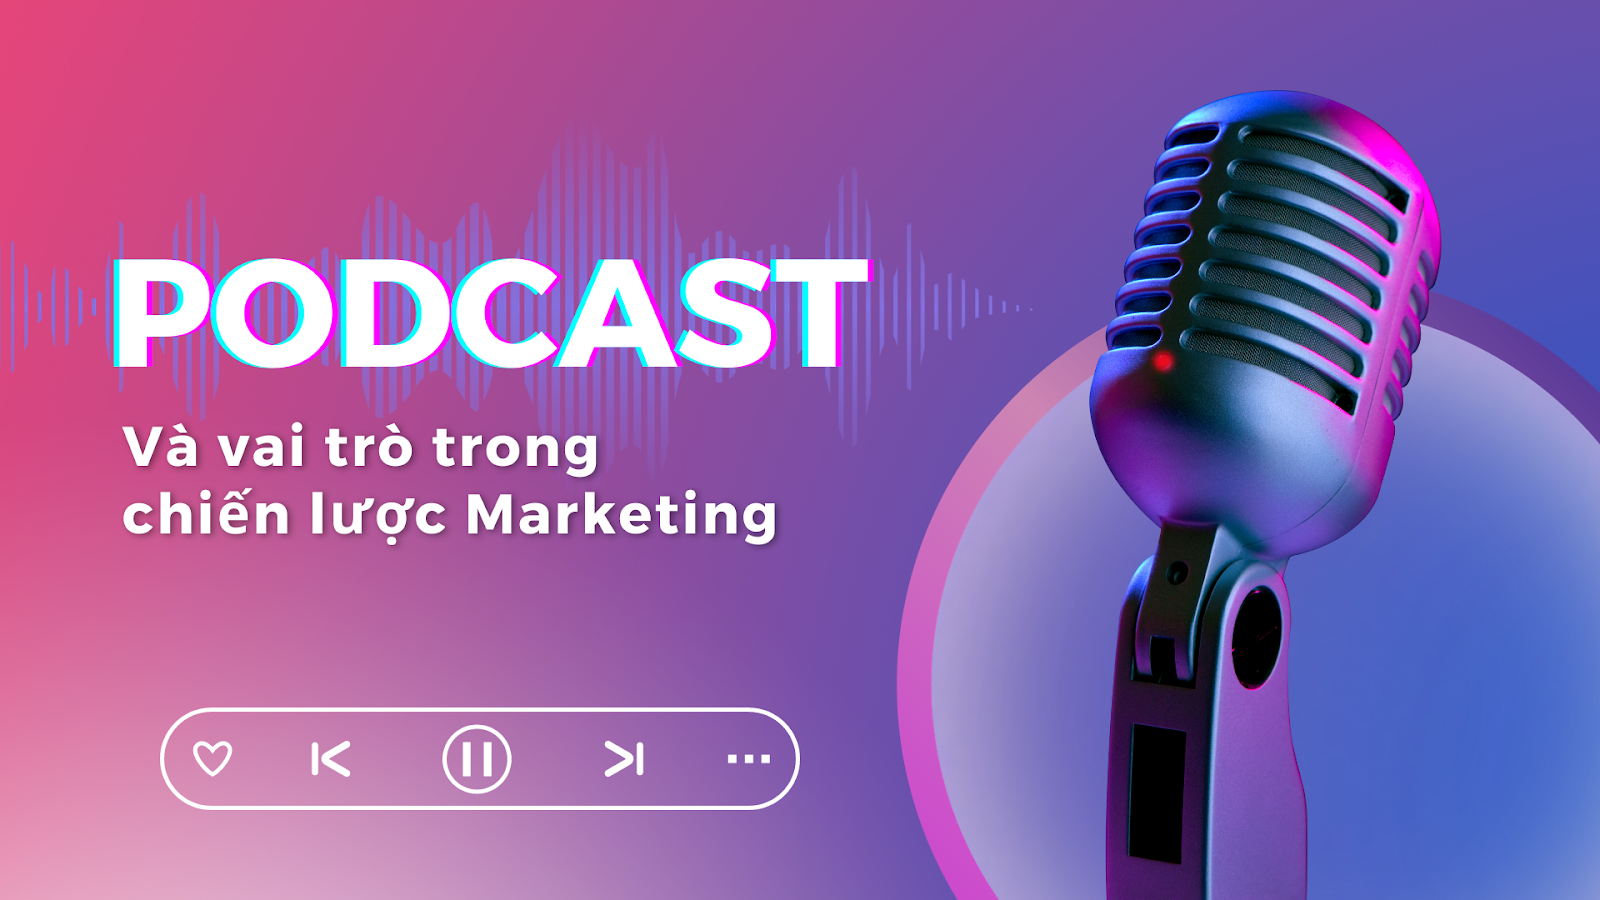 Podcast đóng vai trò quan trọng trong chiến lược Marketing